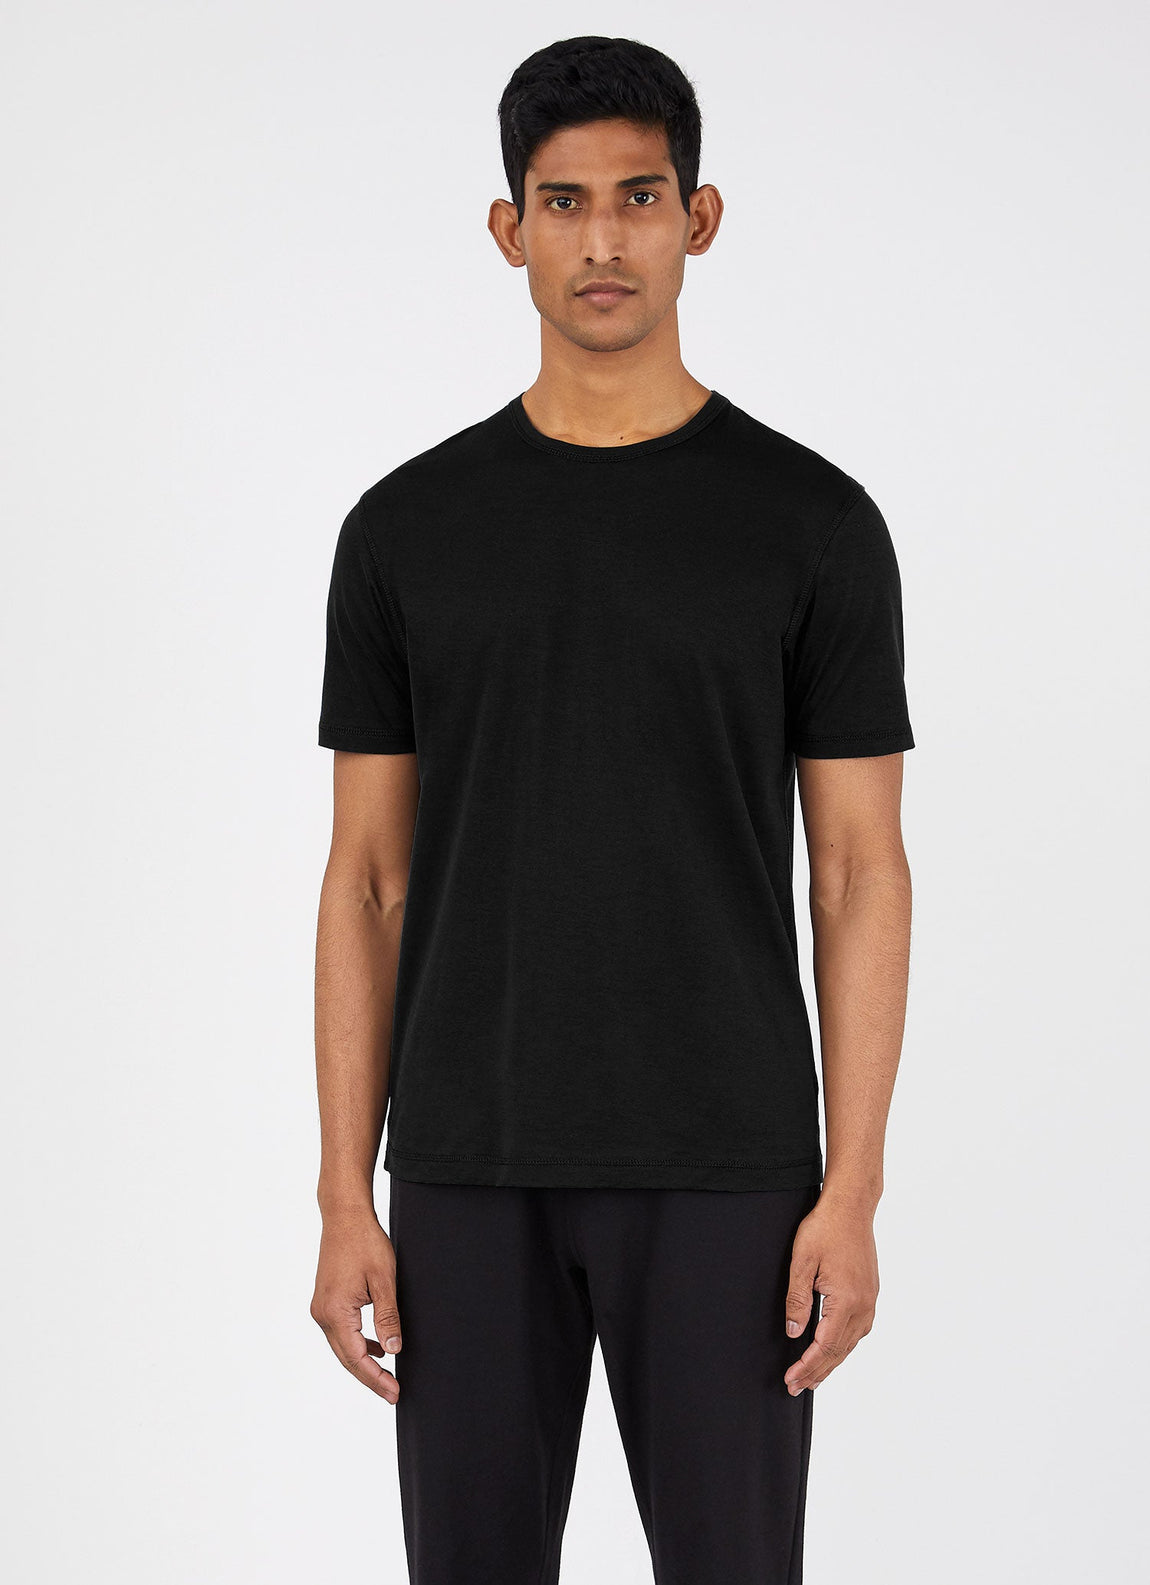 Men's DriRelease Active T Shirt in Black